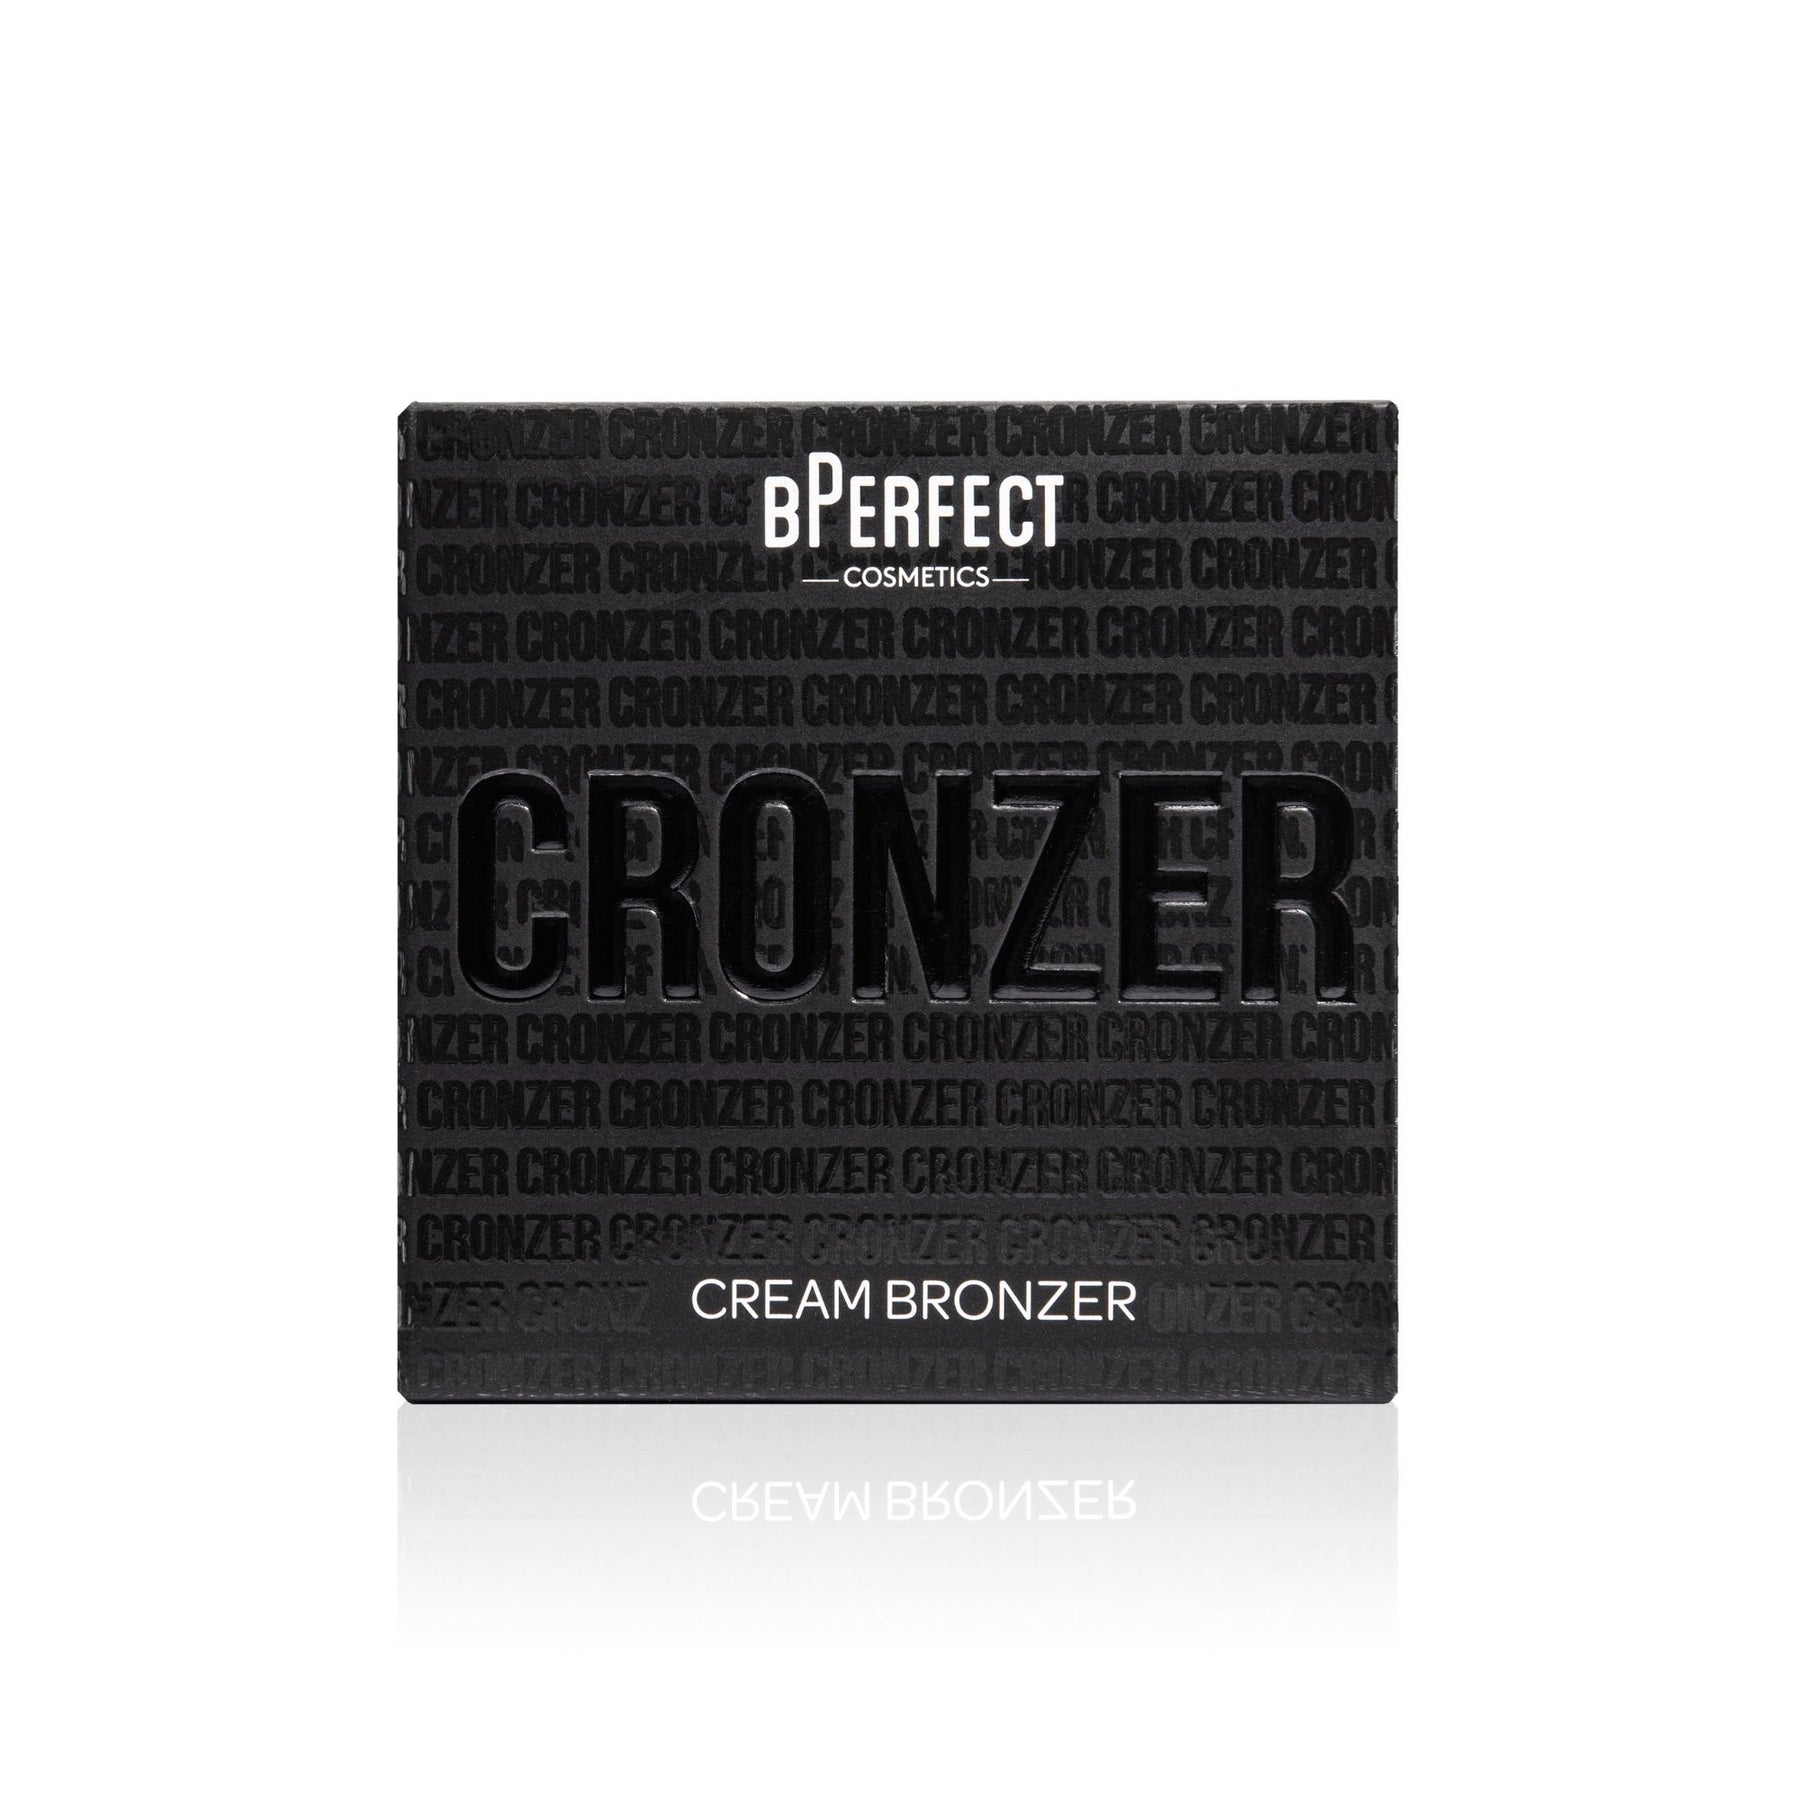 Cronzer Cream Bronzer